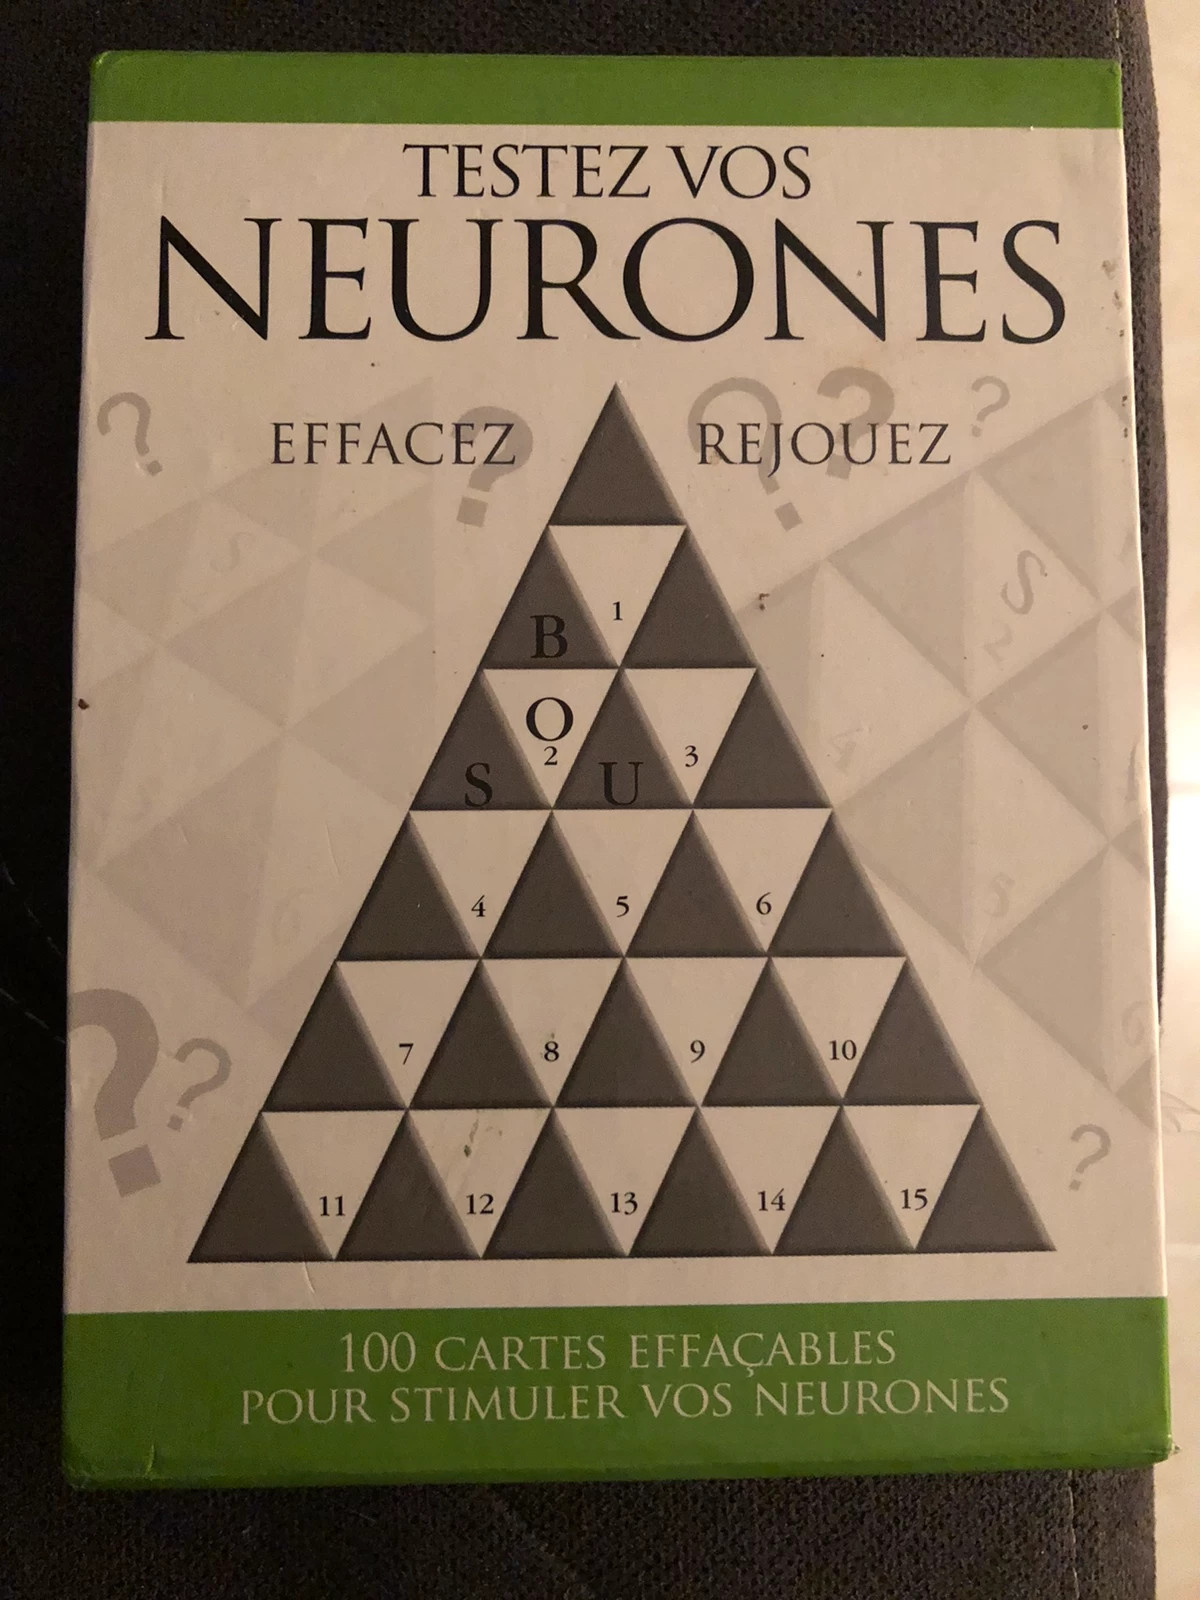 100 Jeux de logique pour stimuler vos neurones